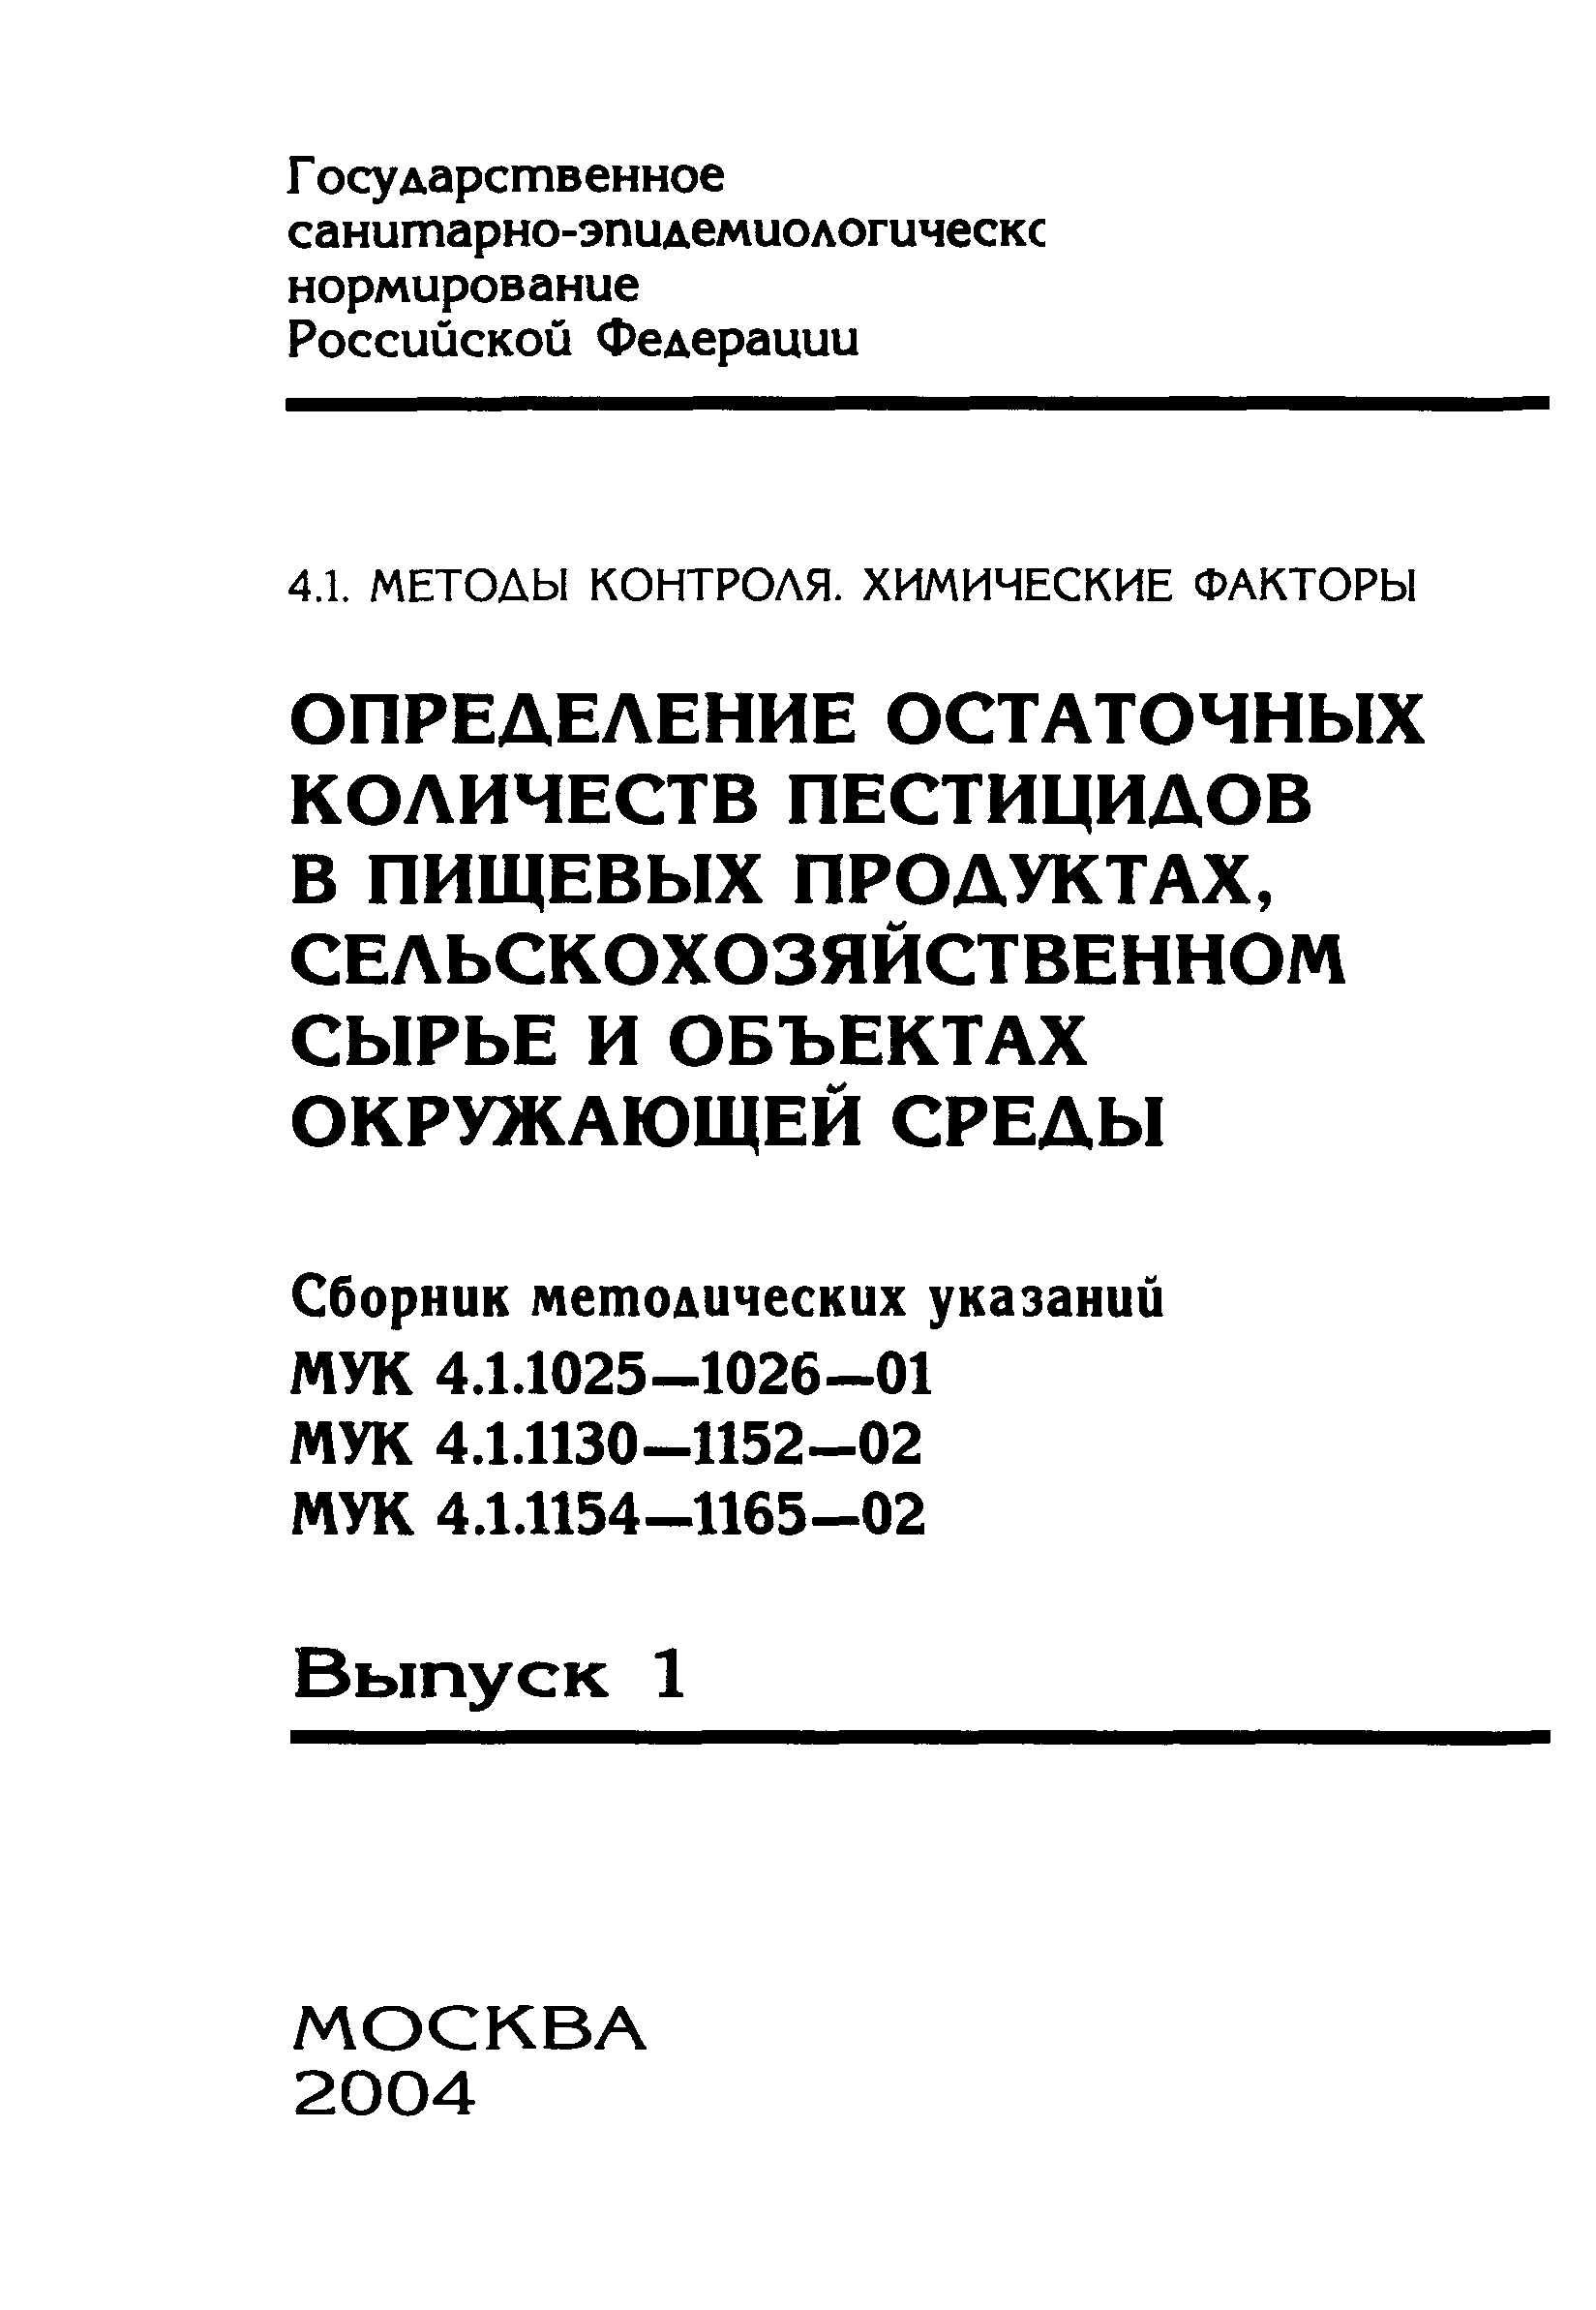 МУК 4.1.1161-02